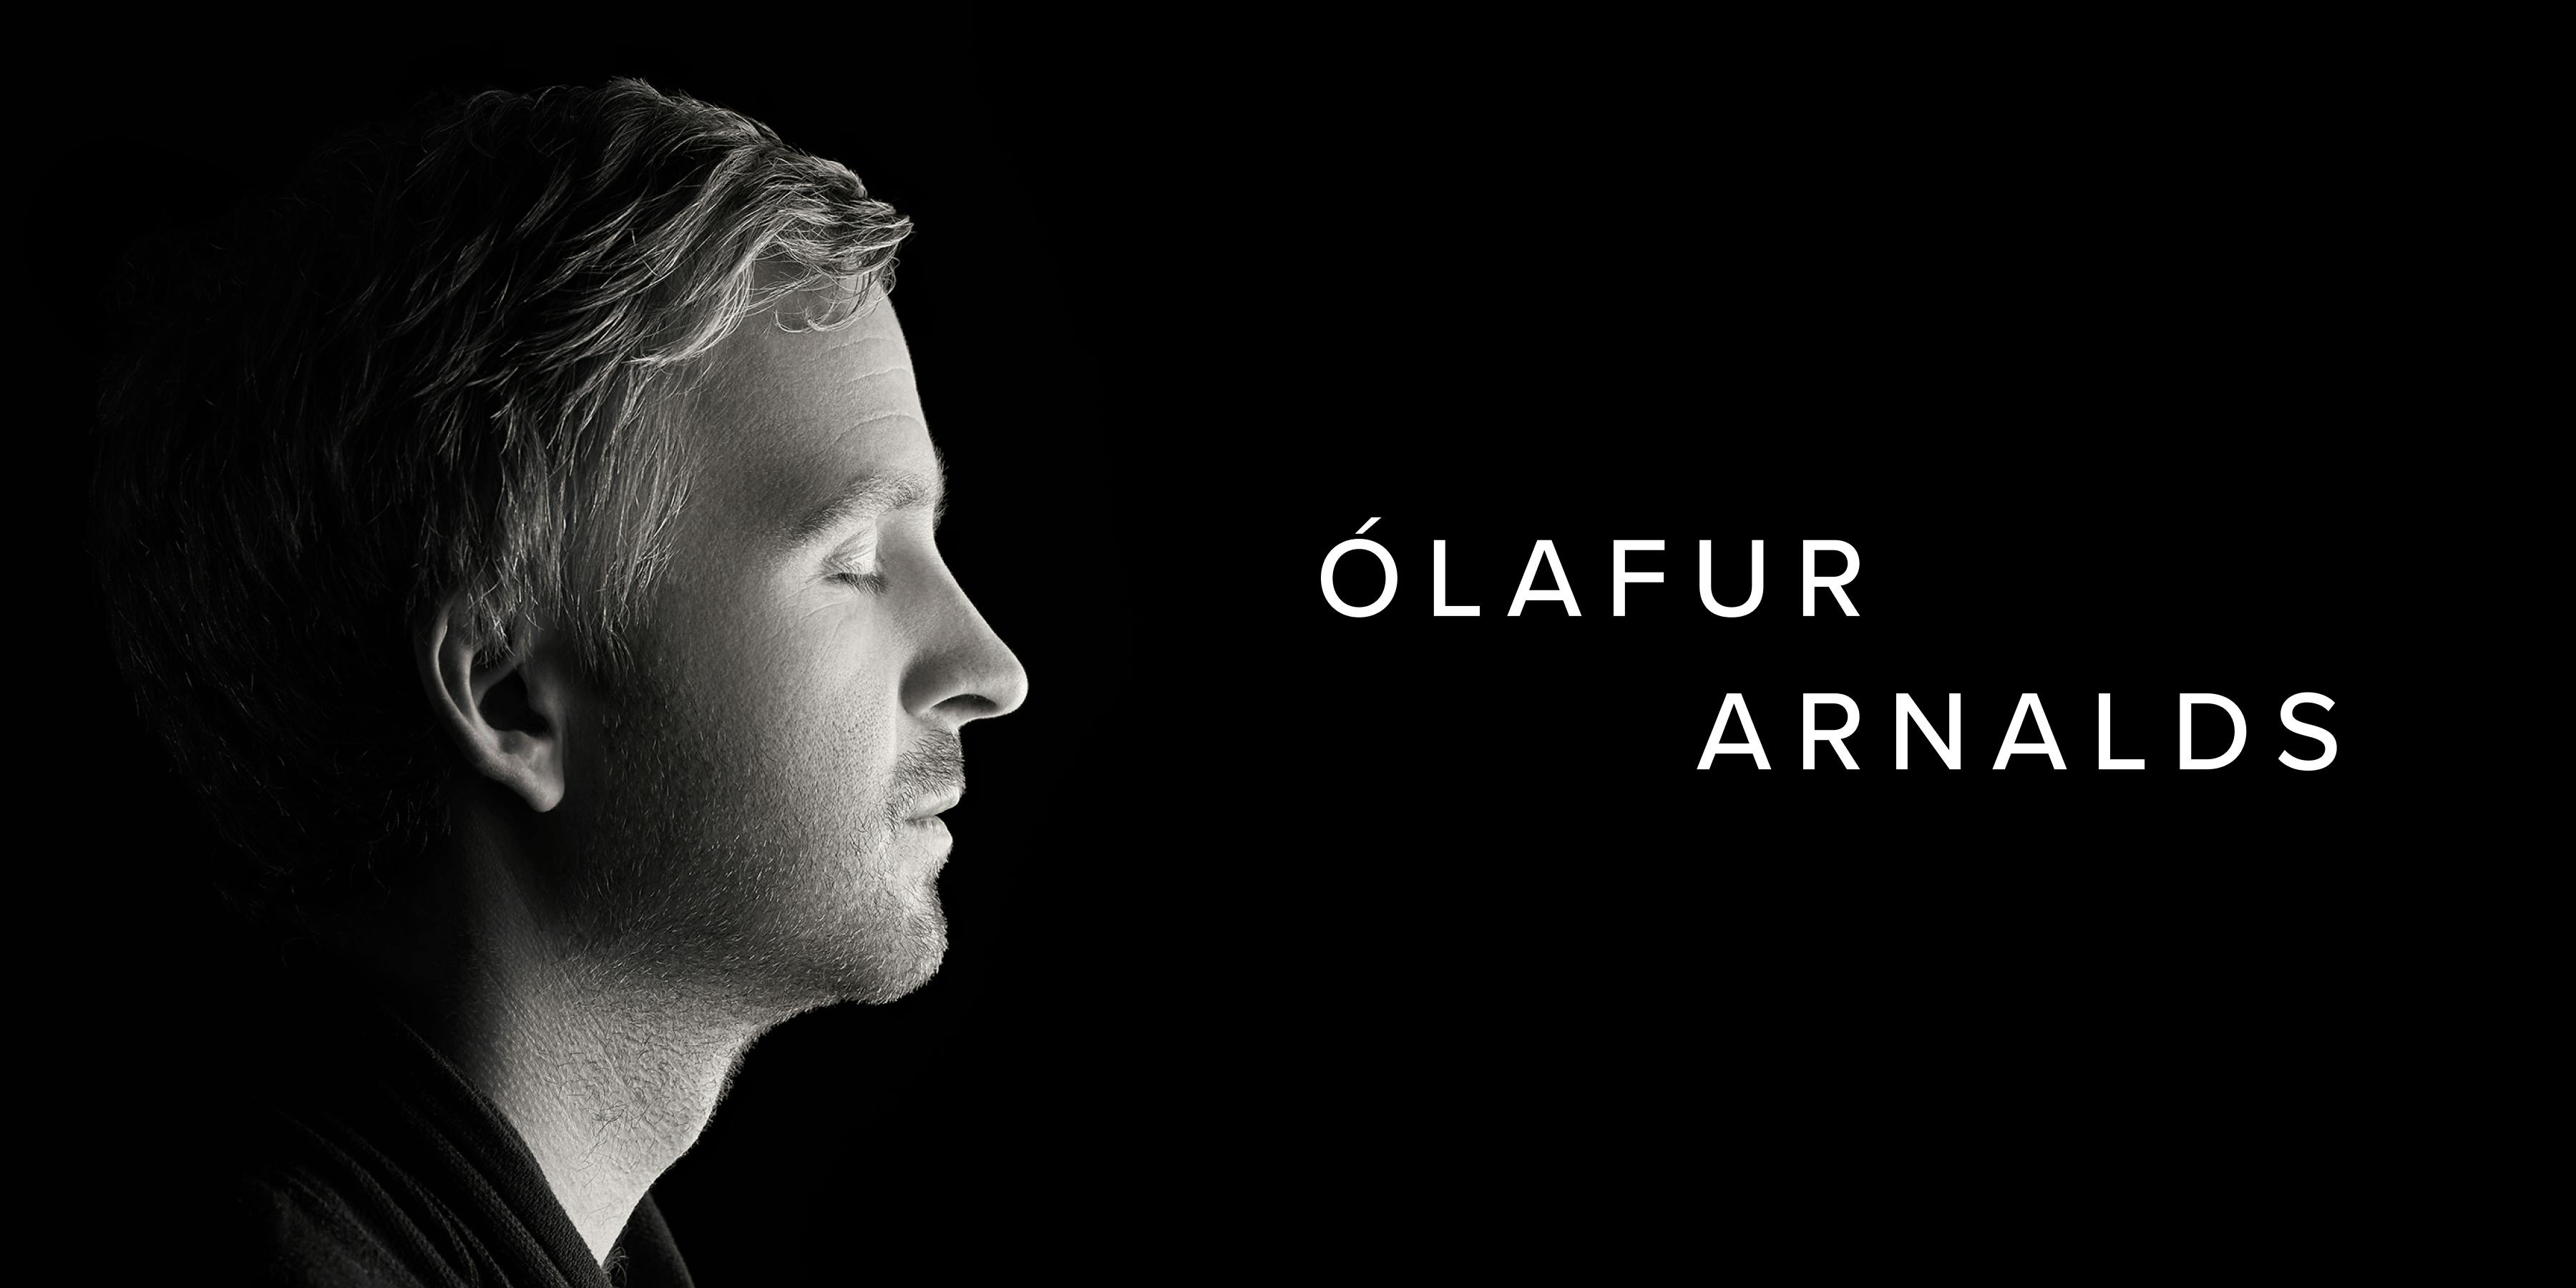 Olafur Arnalds